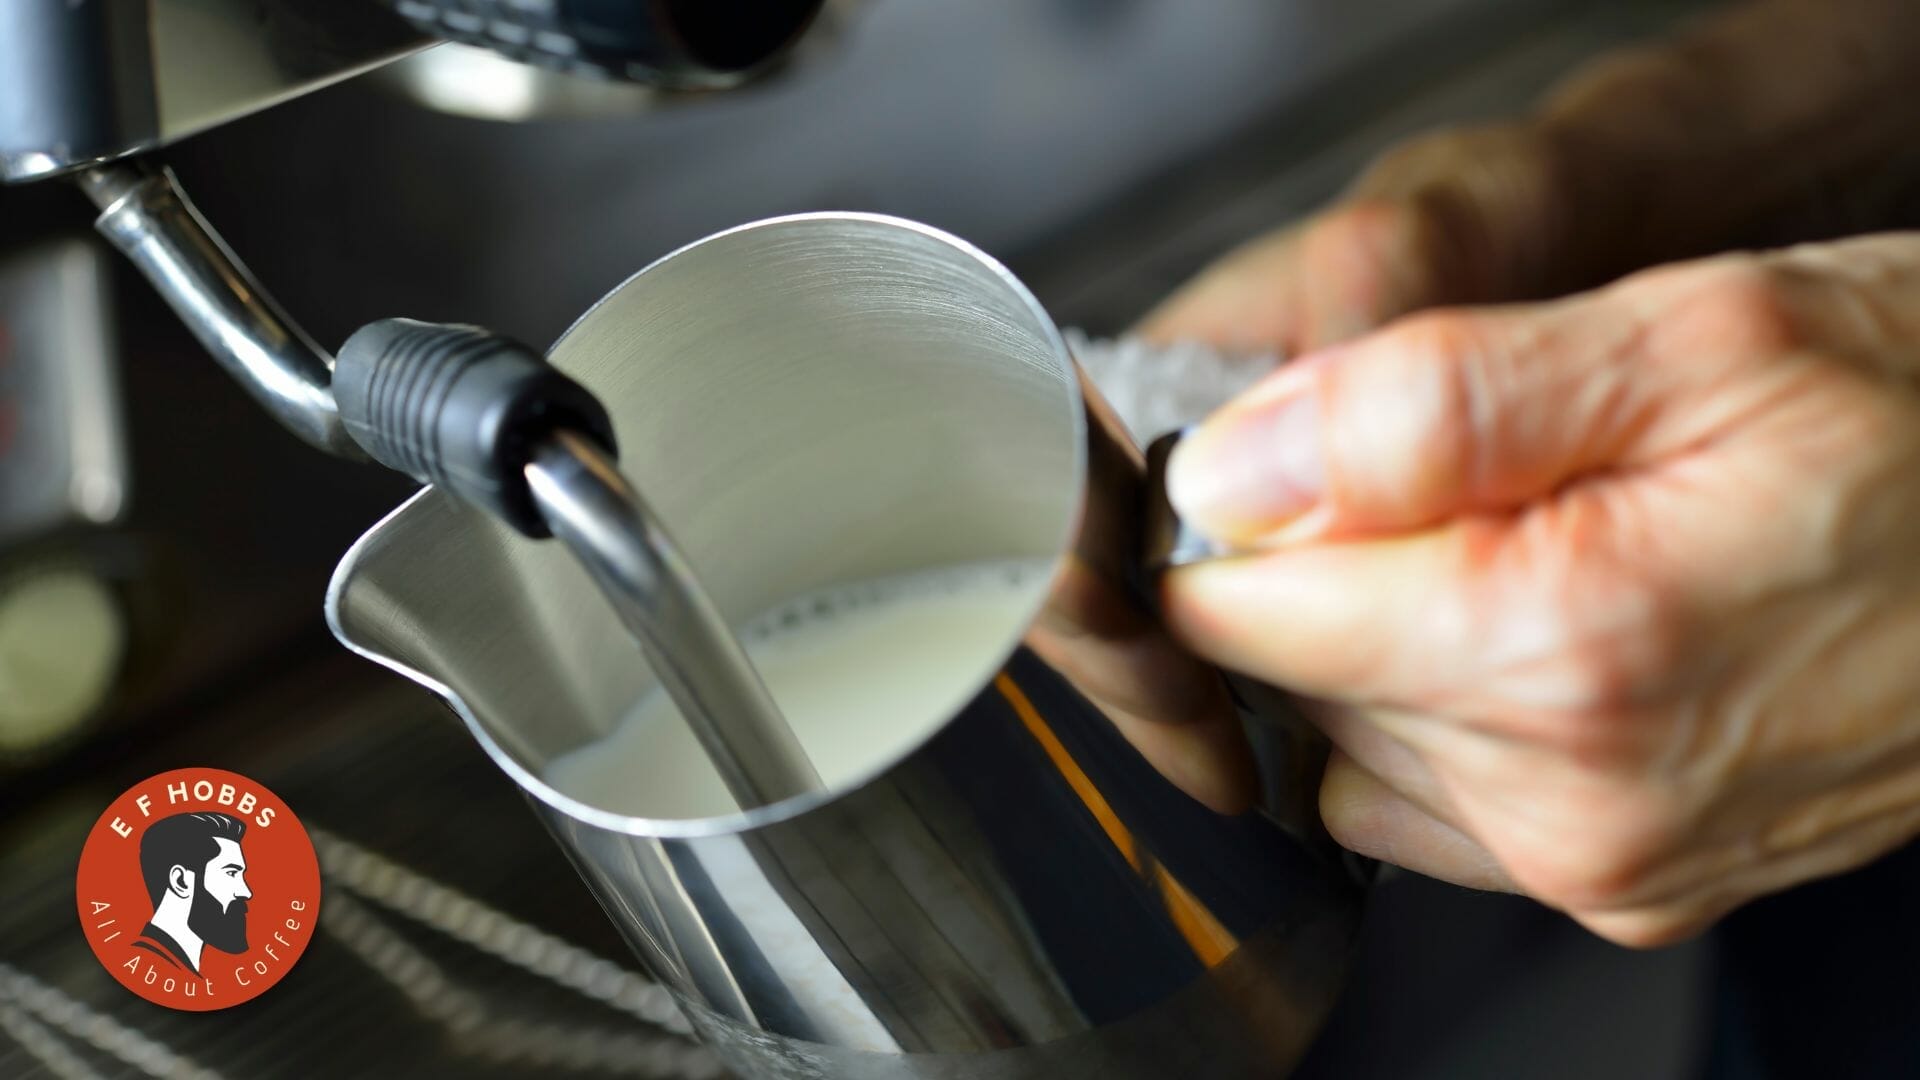 Steam Milk With Delonghi Espresso Machine